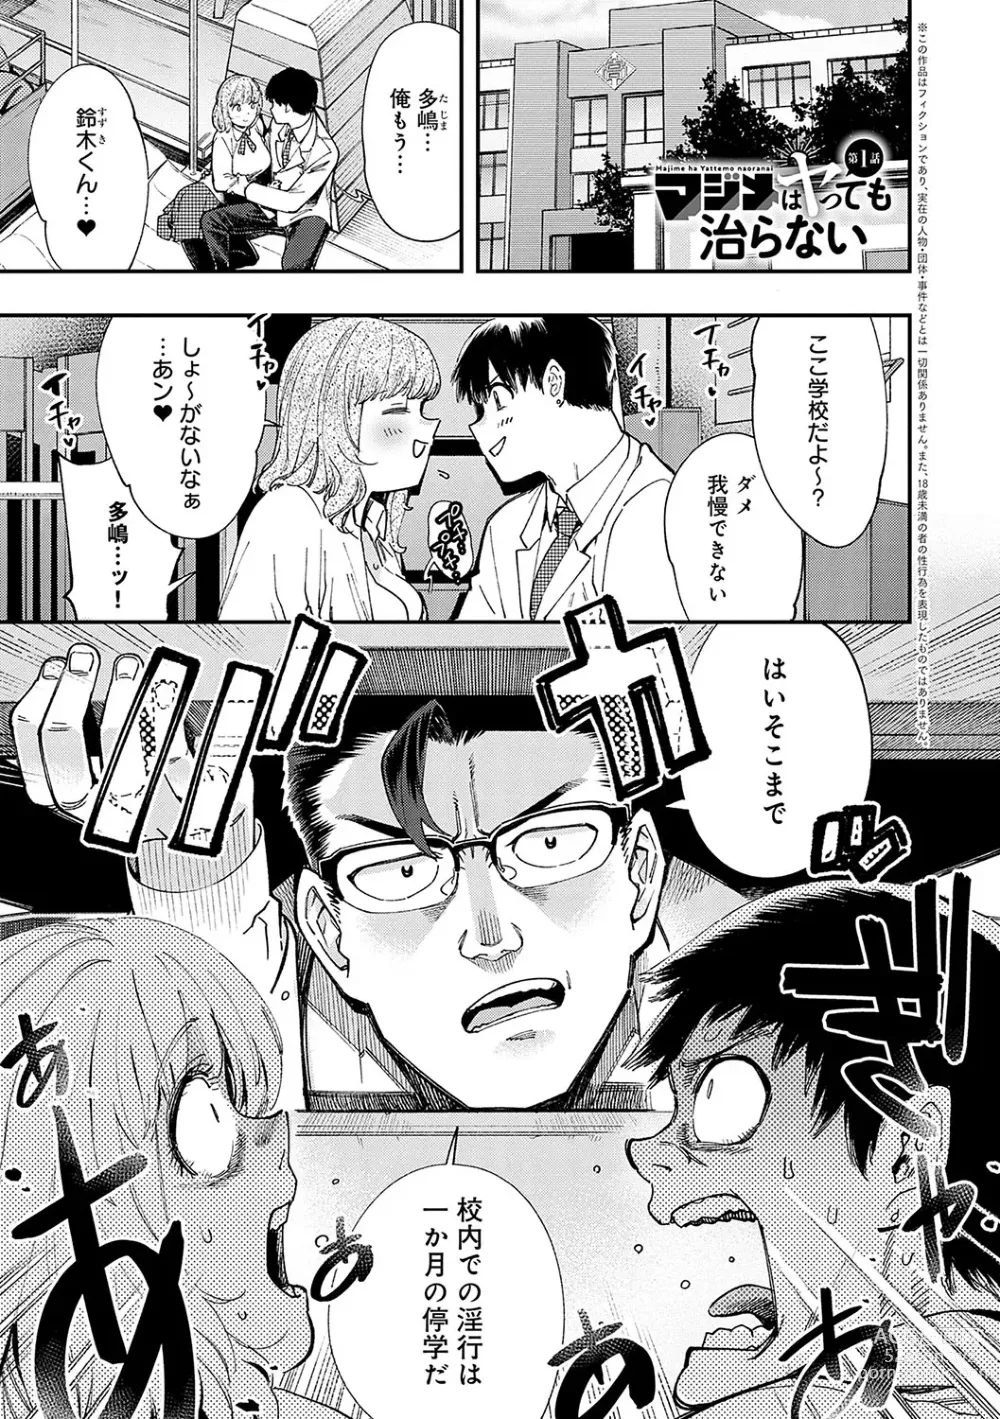 Page 4 of manga Kashikoi Oppai